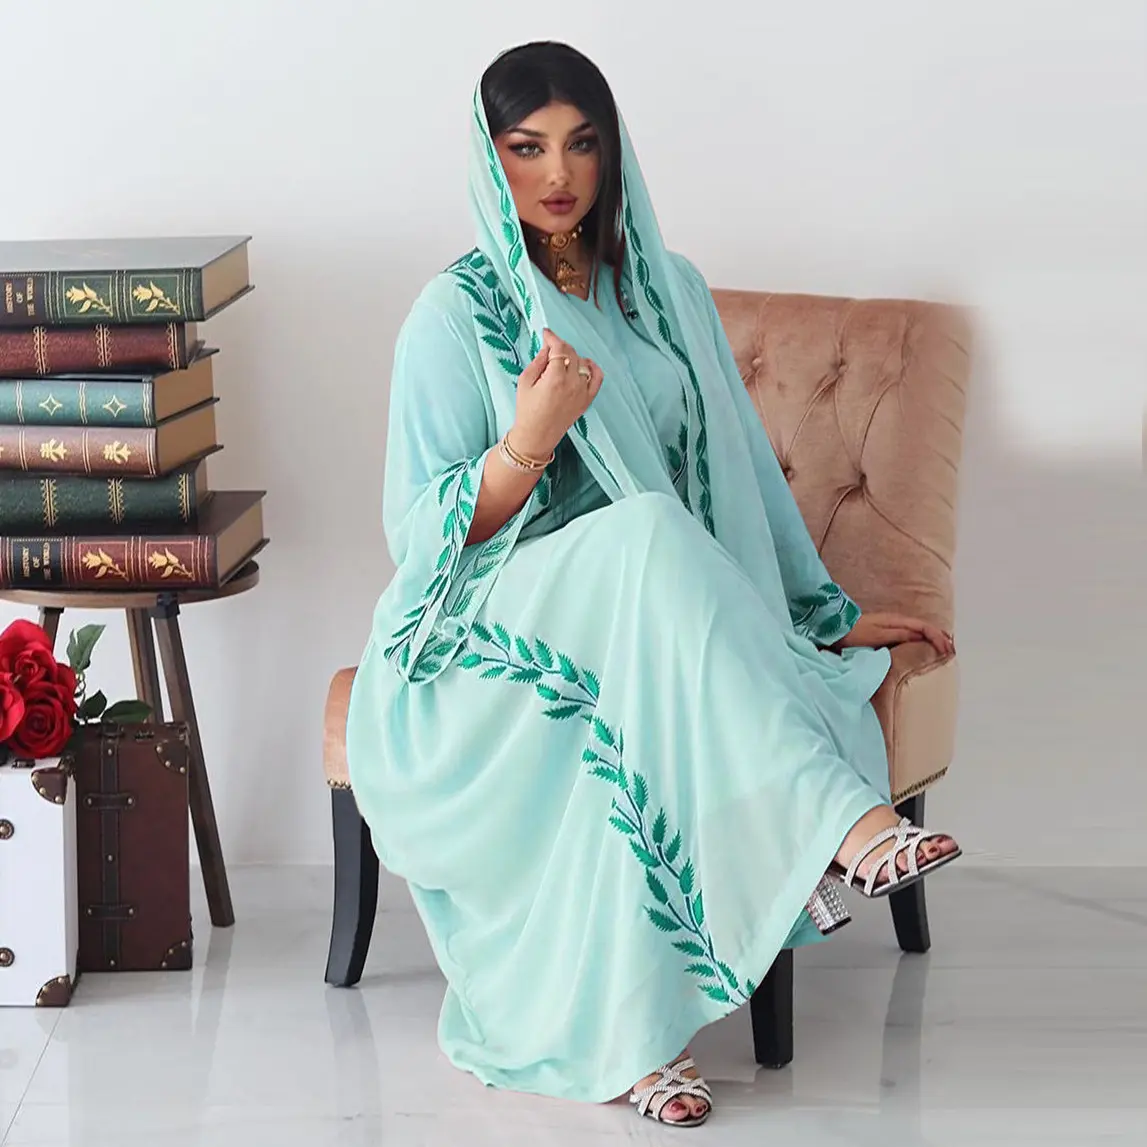 Produttore ricamo etnico abito Abaya sciarpa hijab donna Chiffon medio oriente musulmano Dubai turchia arabo Oman abito marocchino